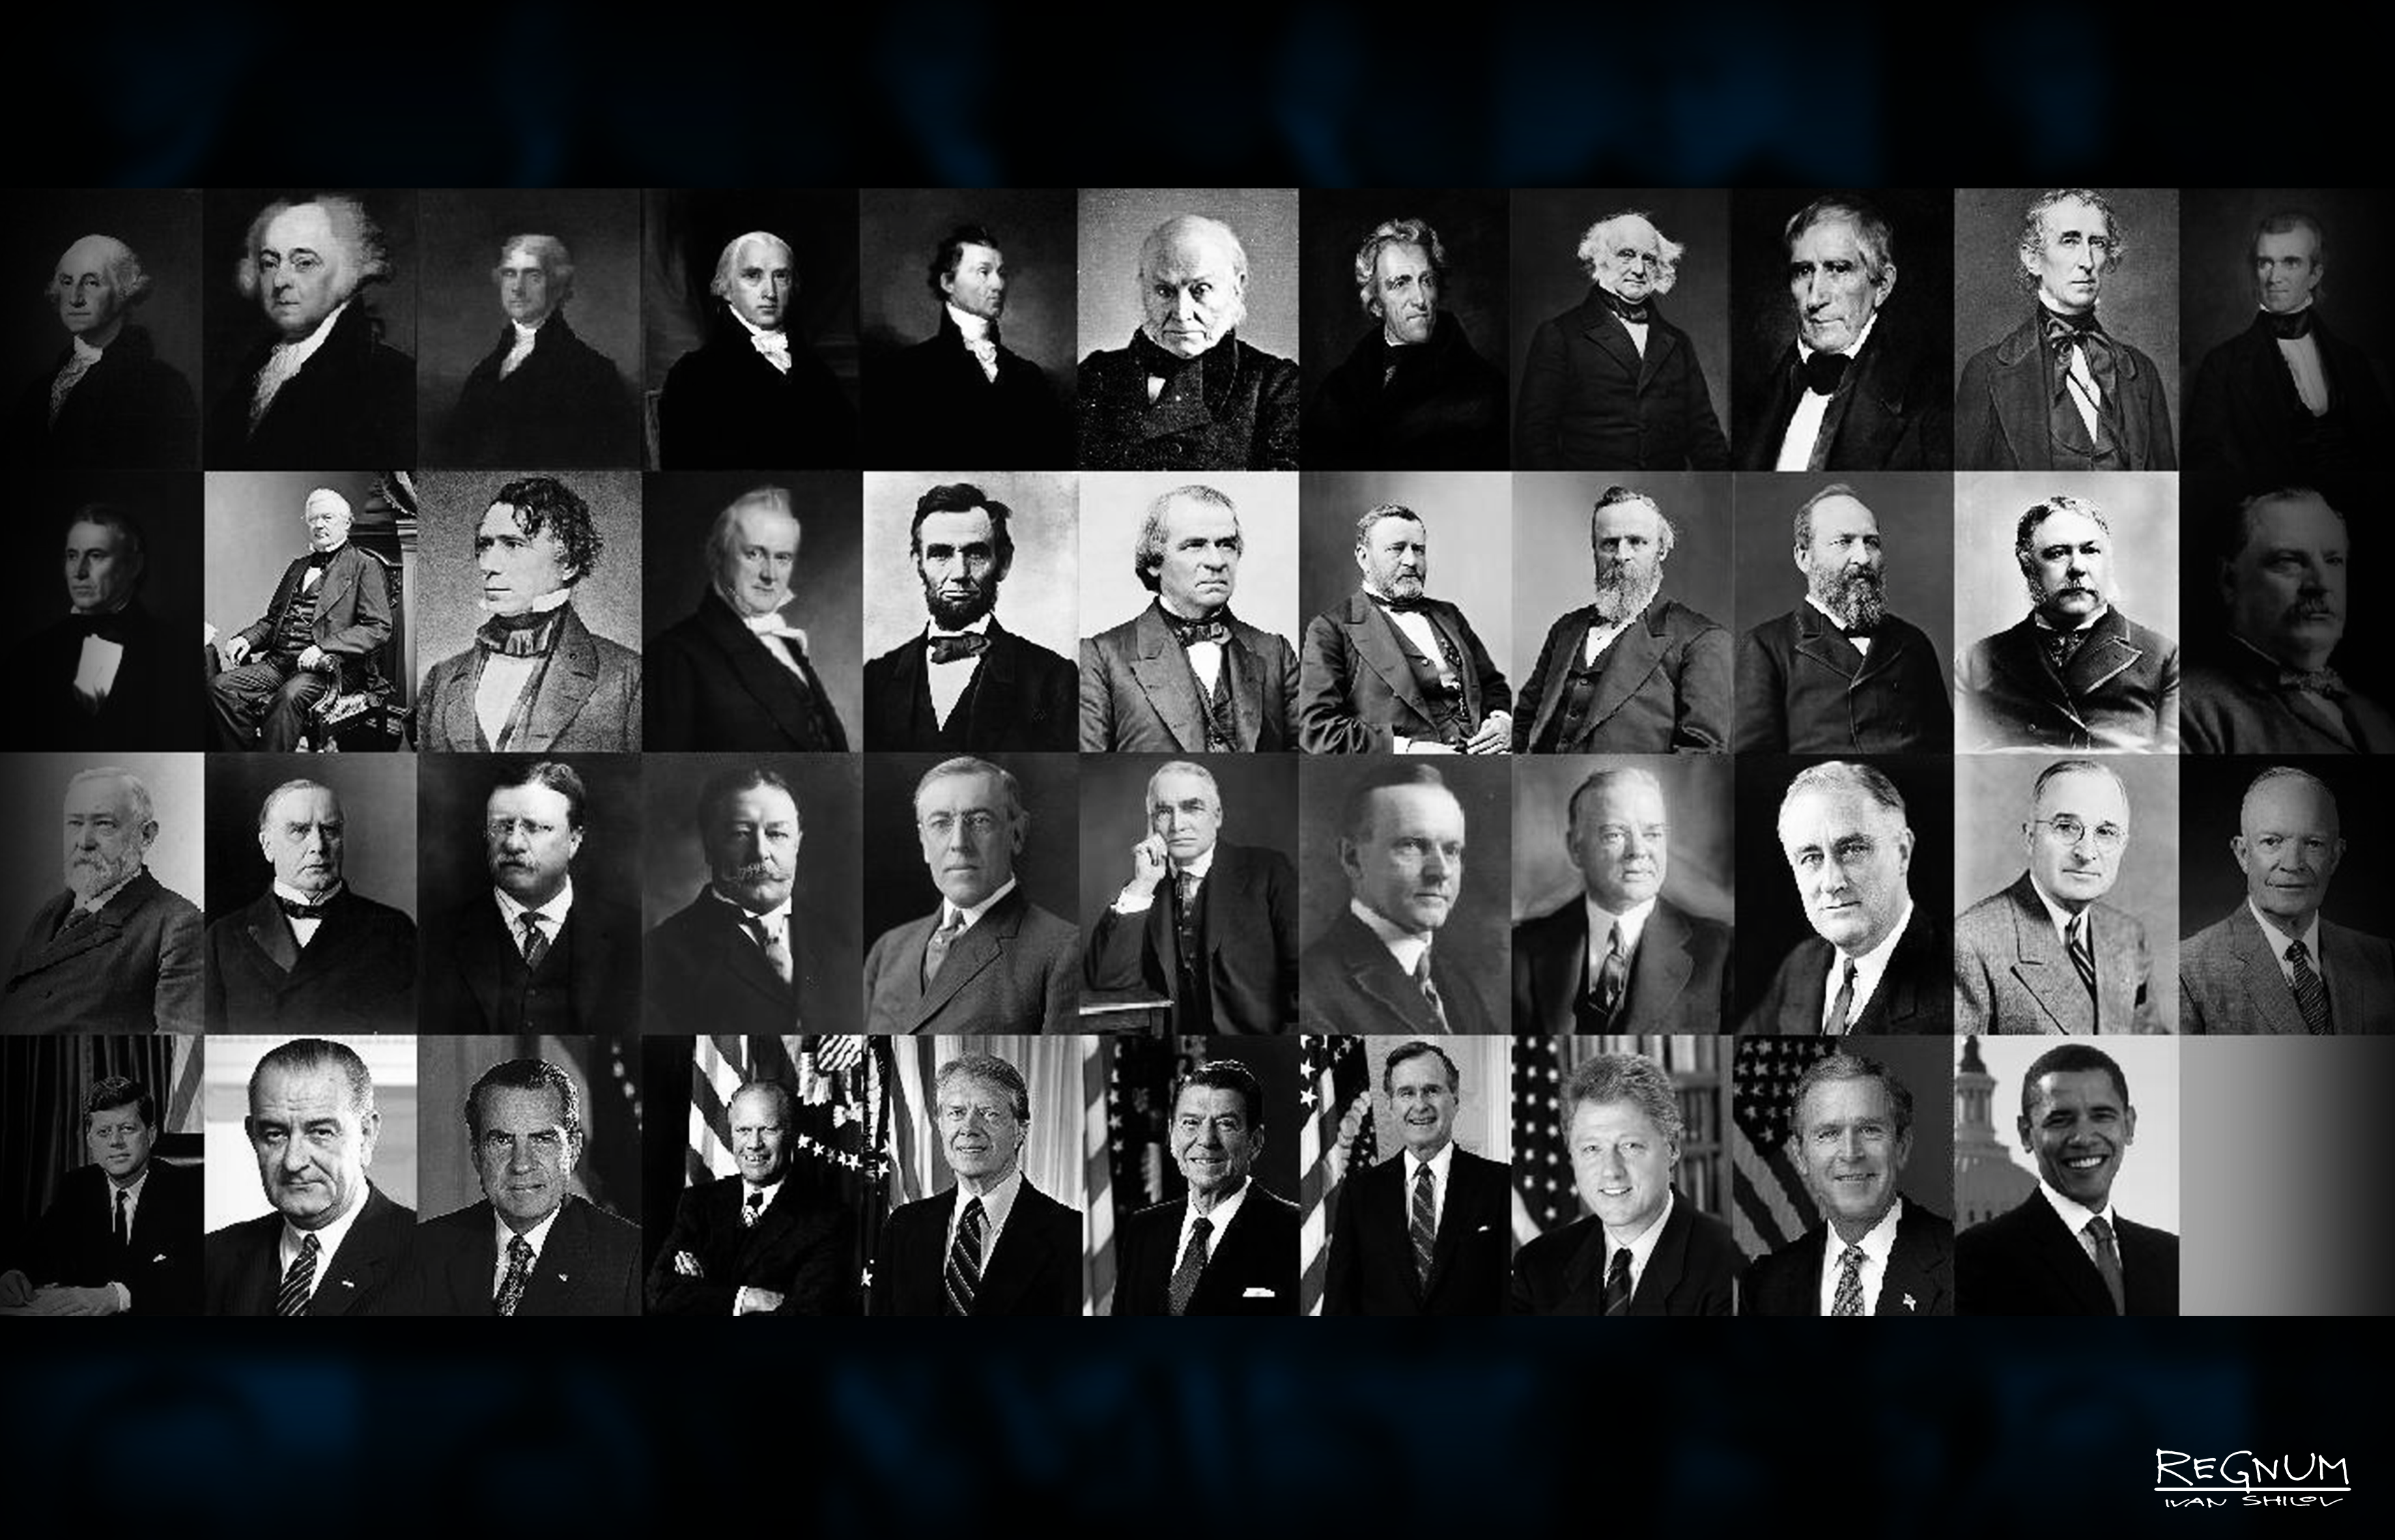 Фото всех президентов россии